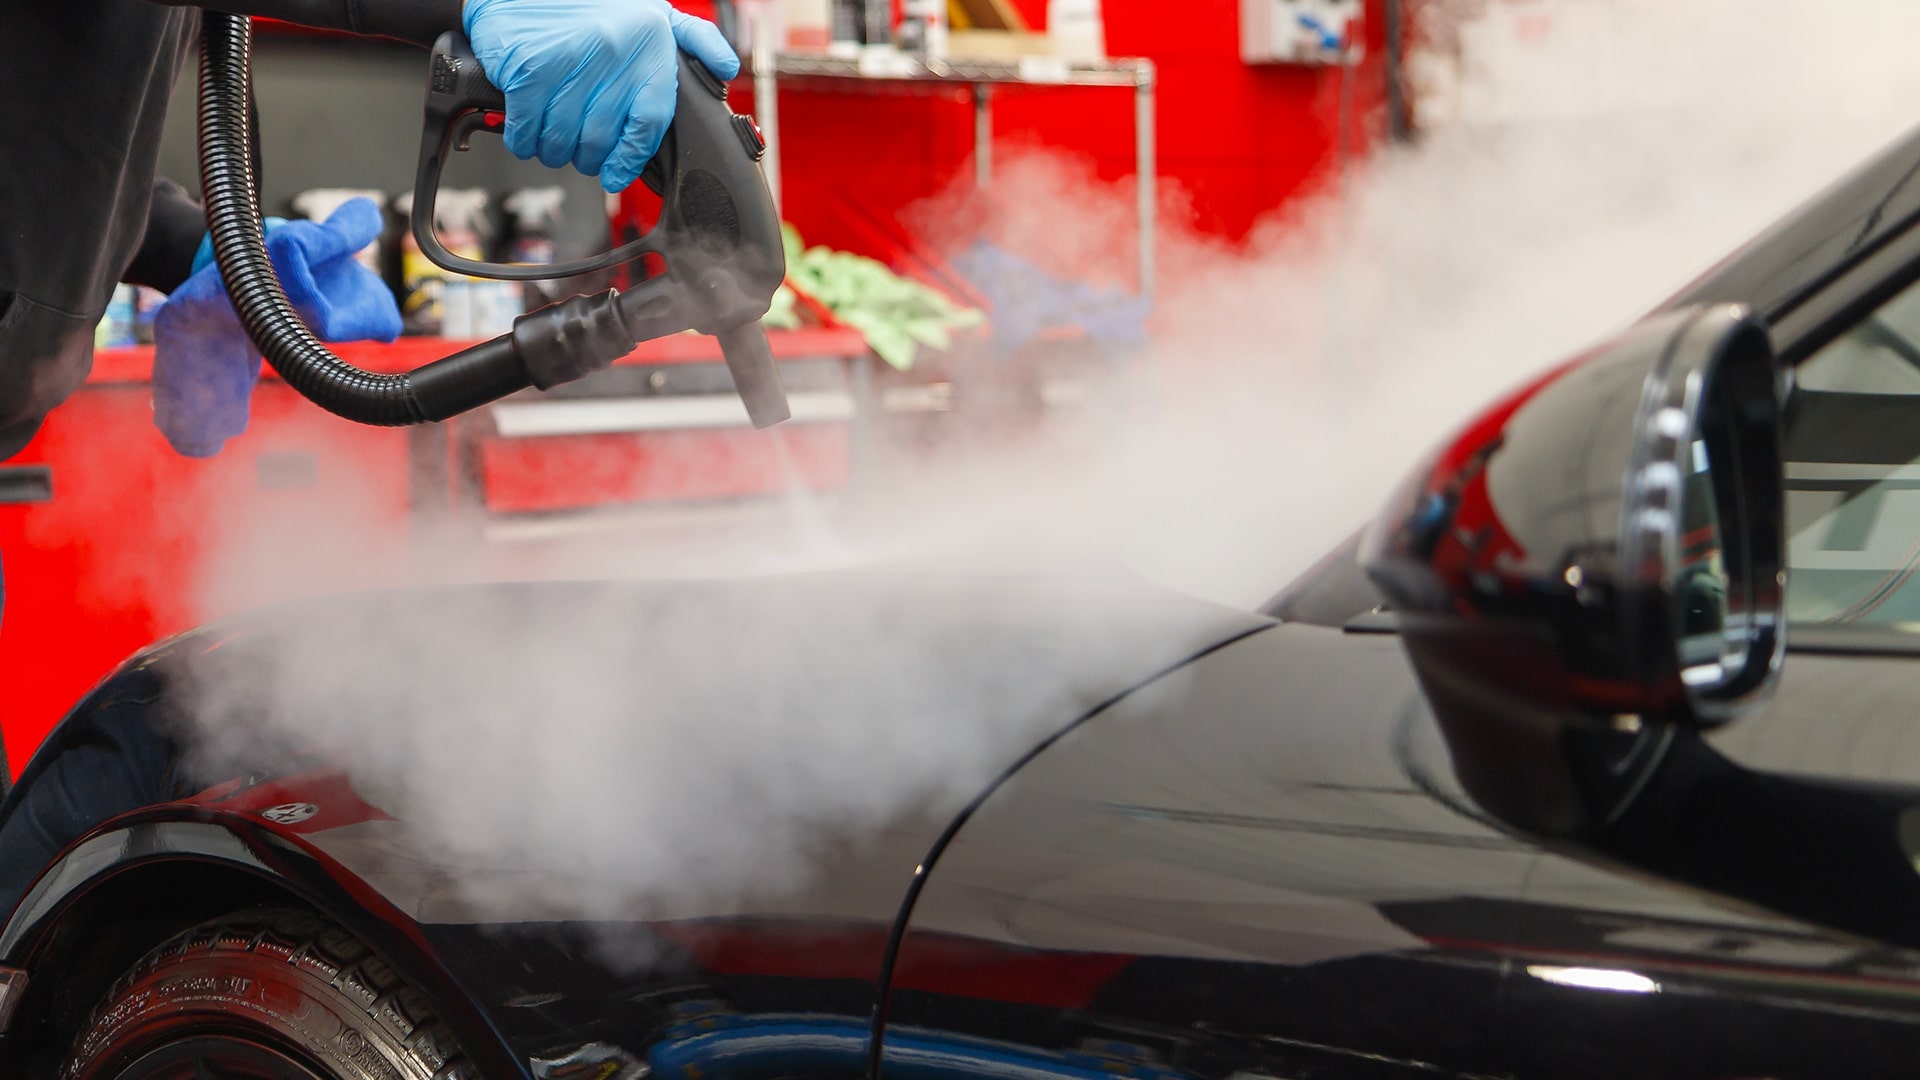 Lavaggio auto a vapore: la soluzione contro lo spreco di acqua -  DettaglioAuto